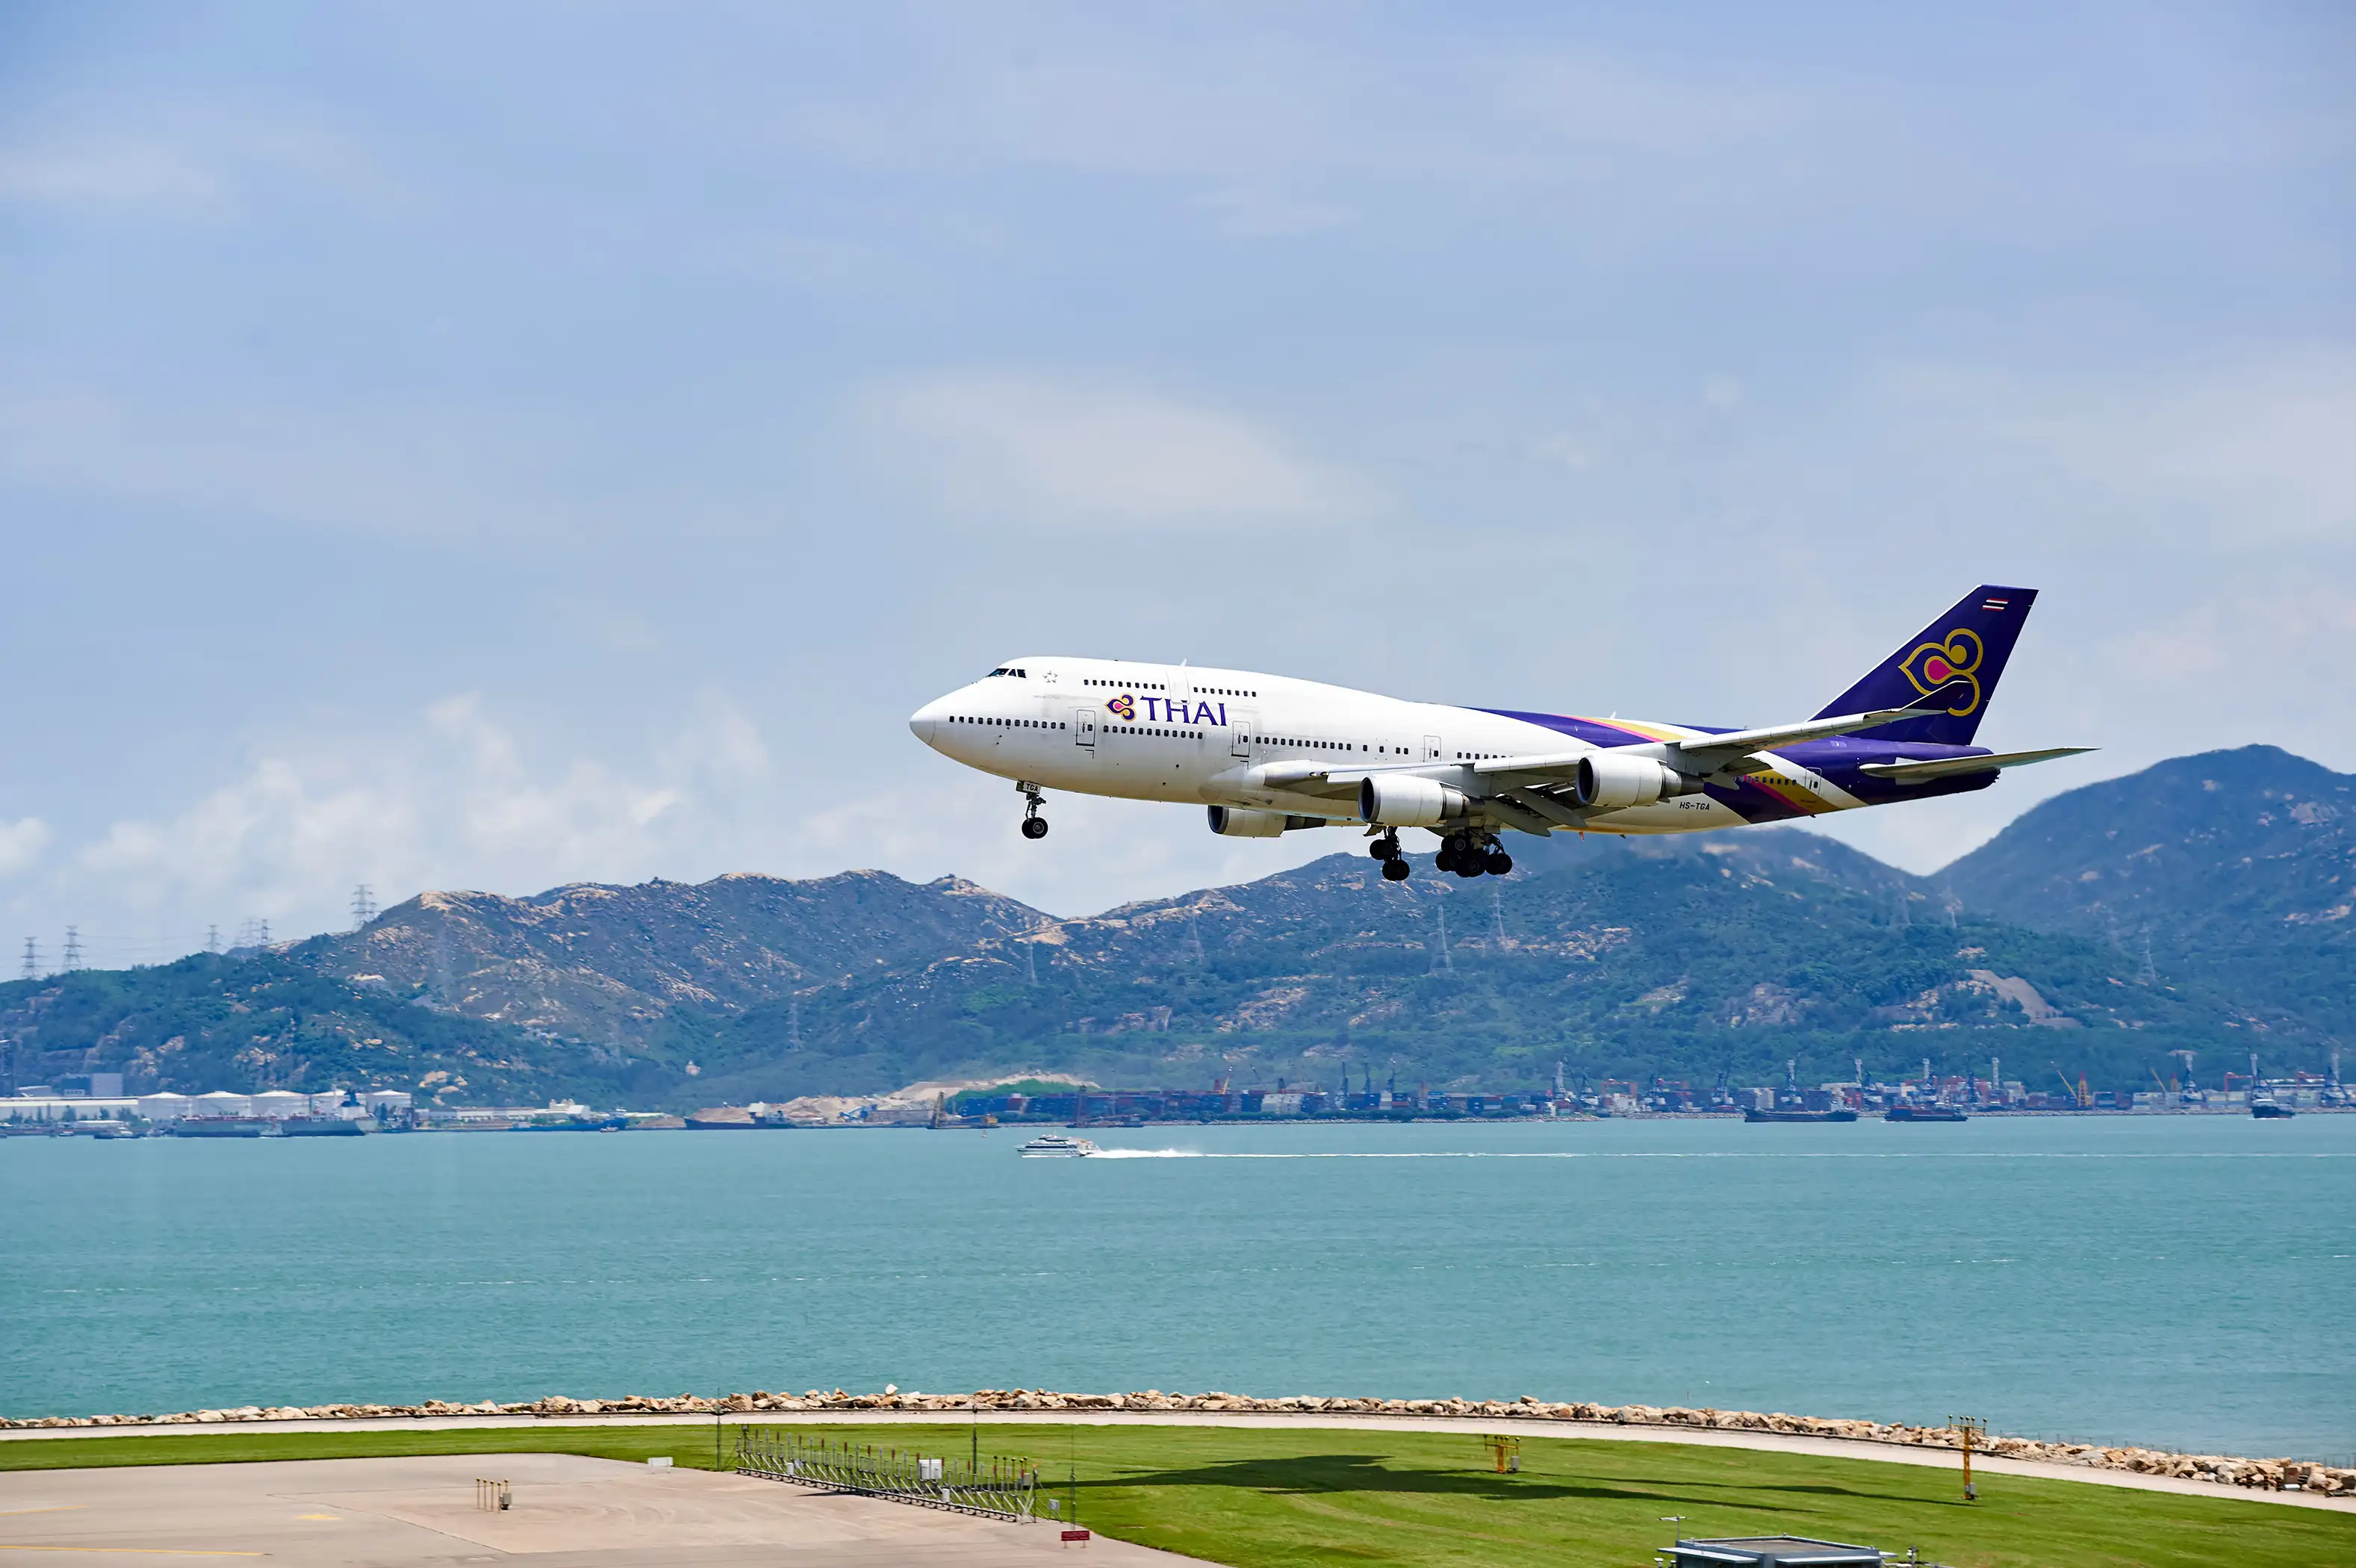 THAI aircraft landing at Hong Kong airport, June 4, 2015